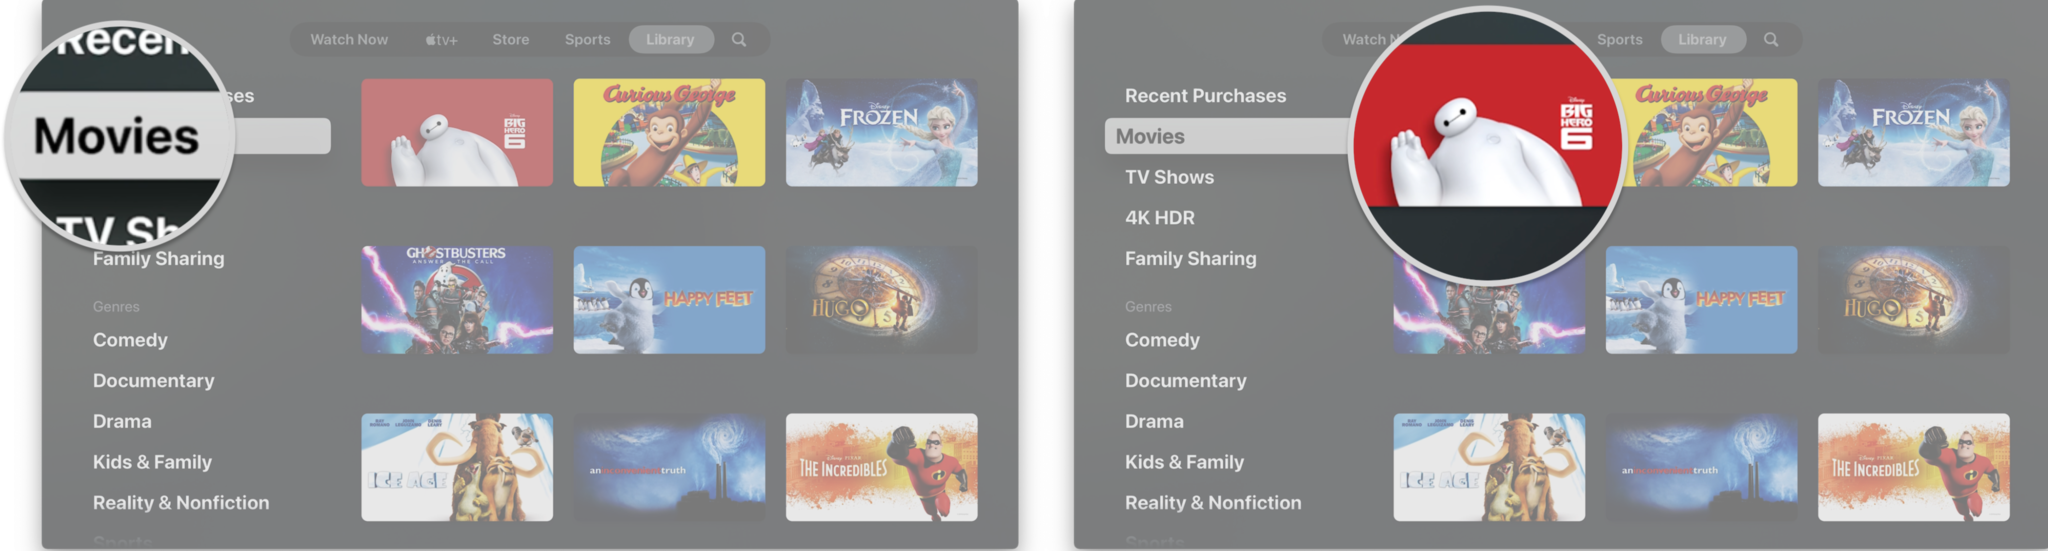 Apple TV'deki TV uygulamasında kitaplığınızdan aşağıdaki adımları izleyerek nasıl oynatılır: Son Satın Alınanlar veya Filmler gibi bir bölüm seçin, Oynatmak istediğiniz başlığa tıklayın